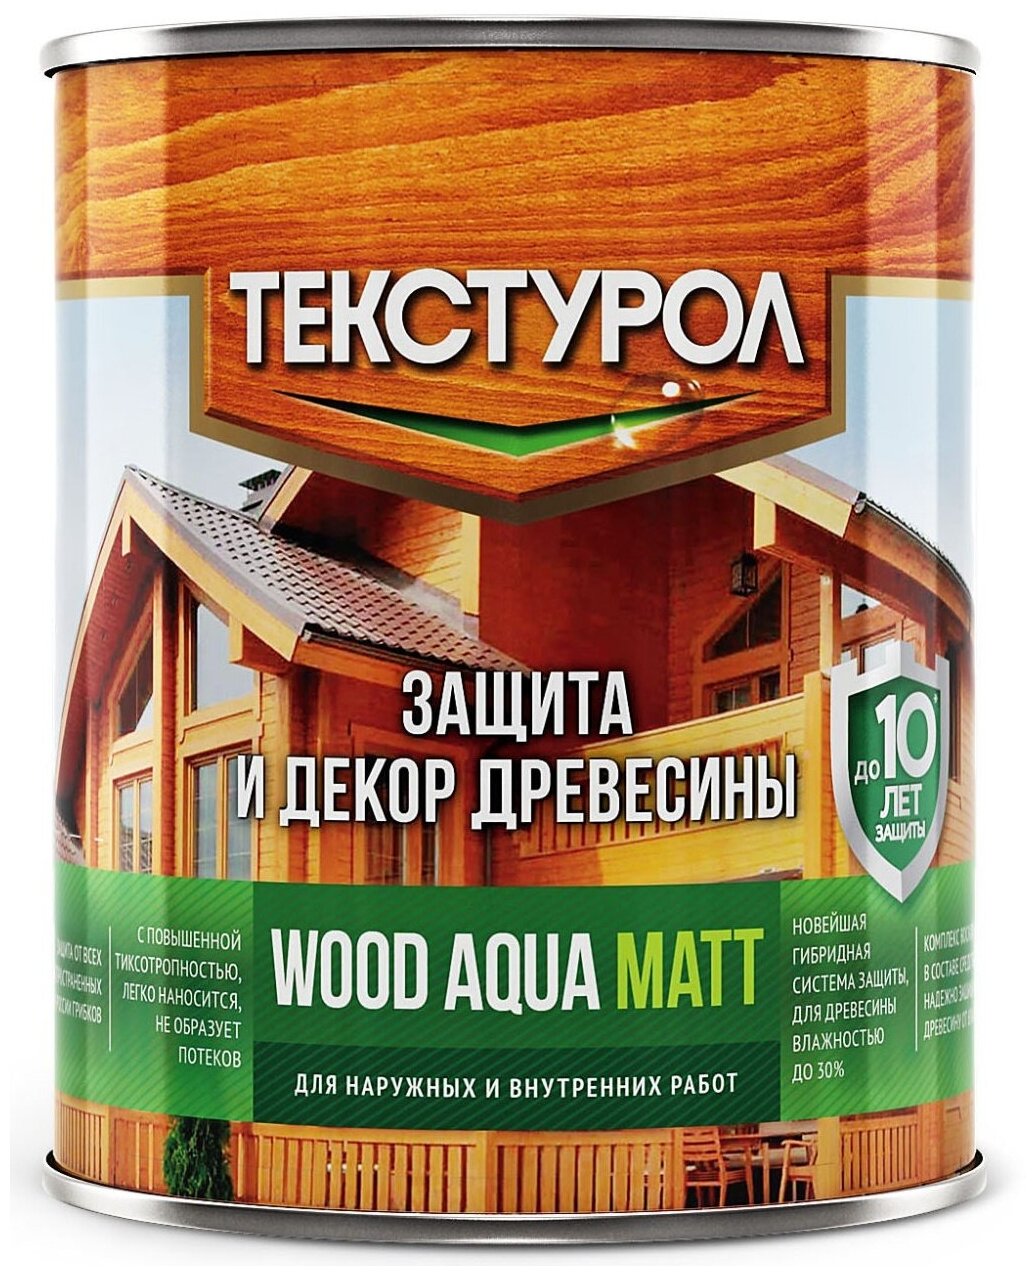 Текстурол WOOD AQUA MATT деревозащитное средство на вод. основе Бесцветный 0,8л